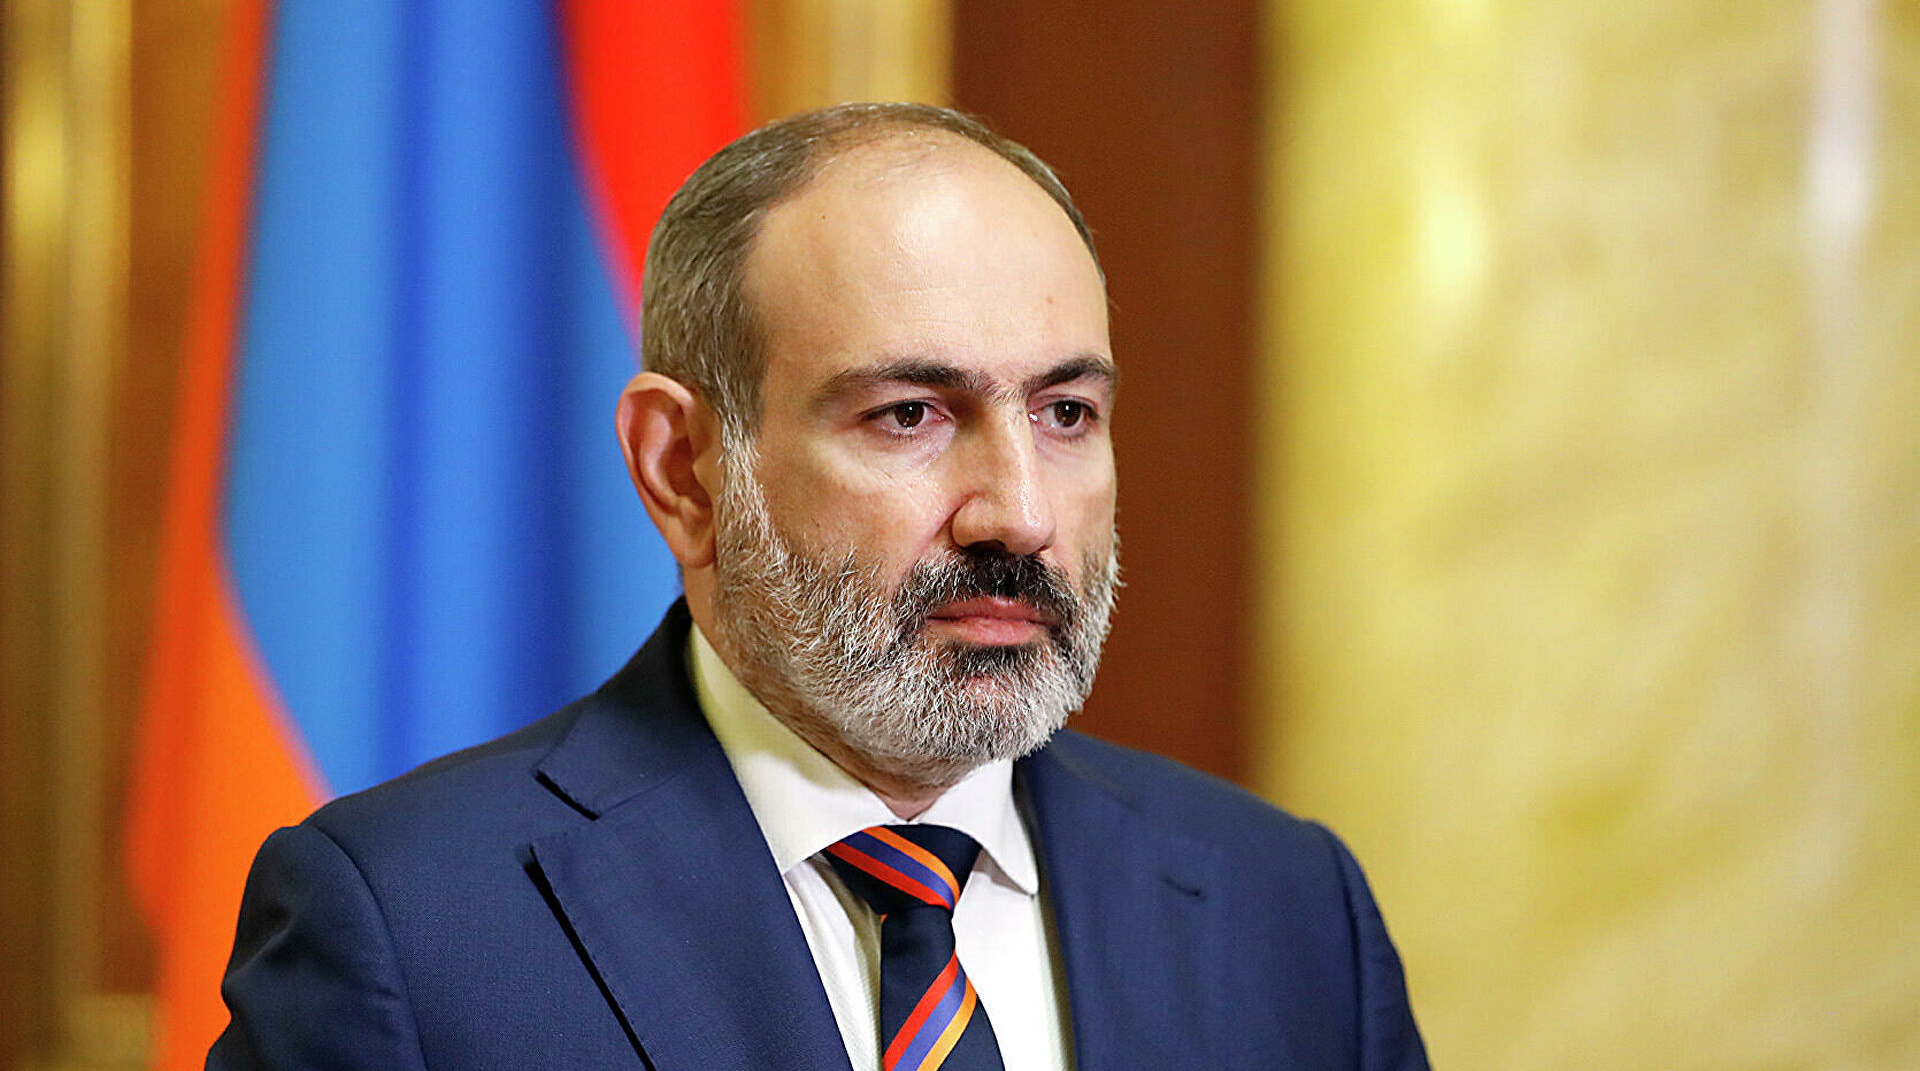 Пашинян выступил с обращением к нации из-за Карабаха: "Их цель - армяне и геноцид армян"